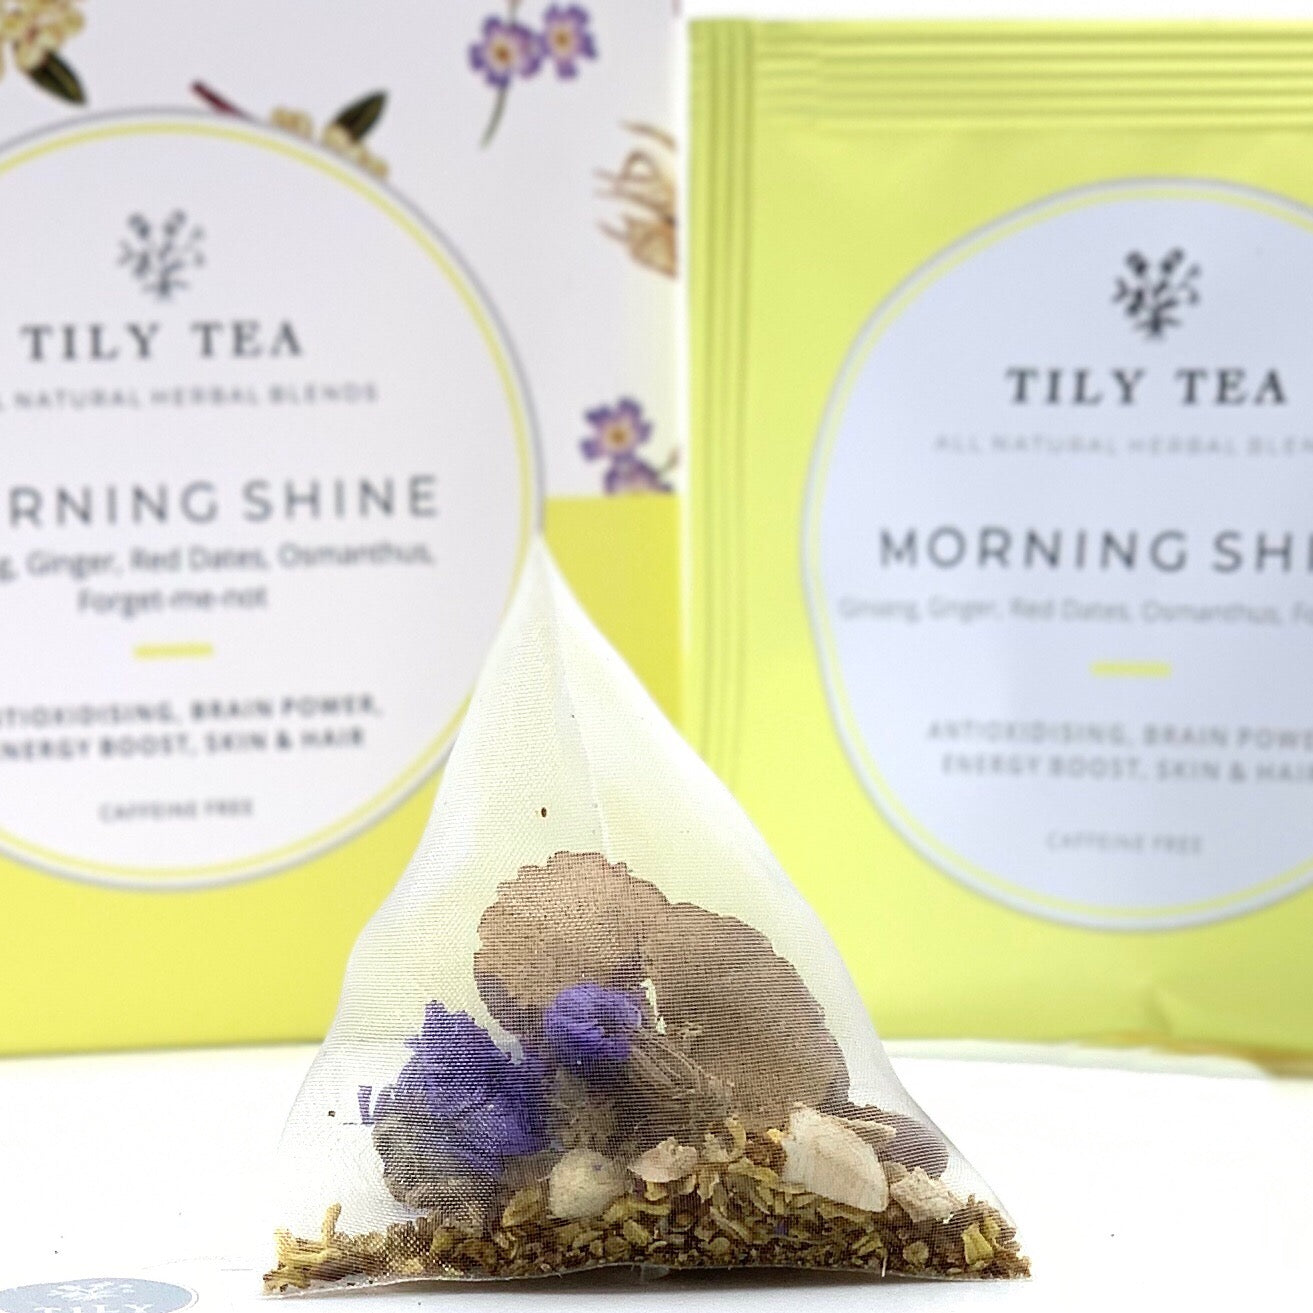 Morning Shine – Tily Tea